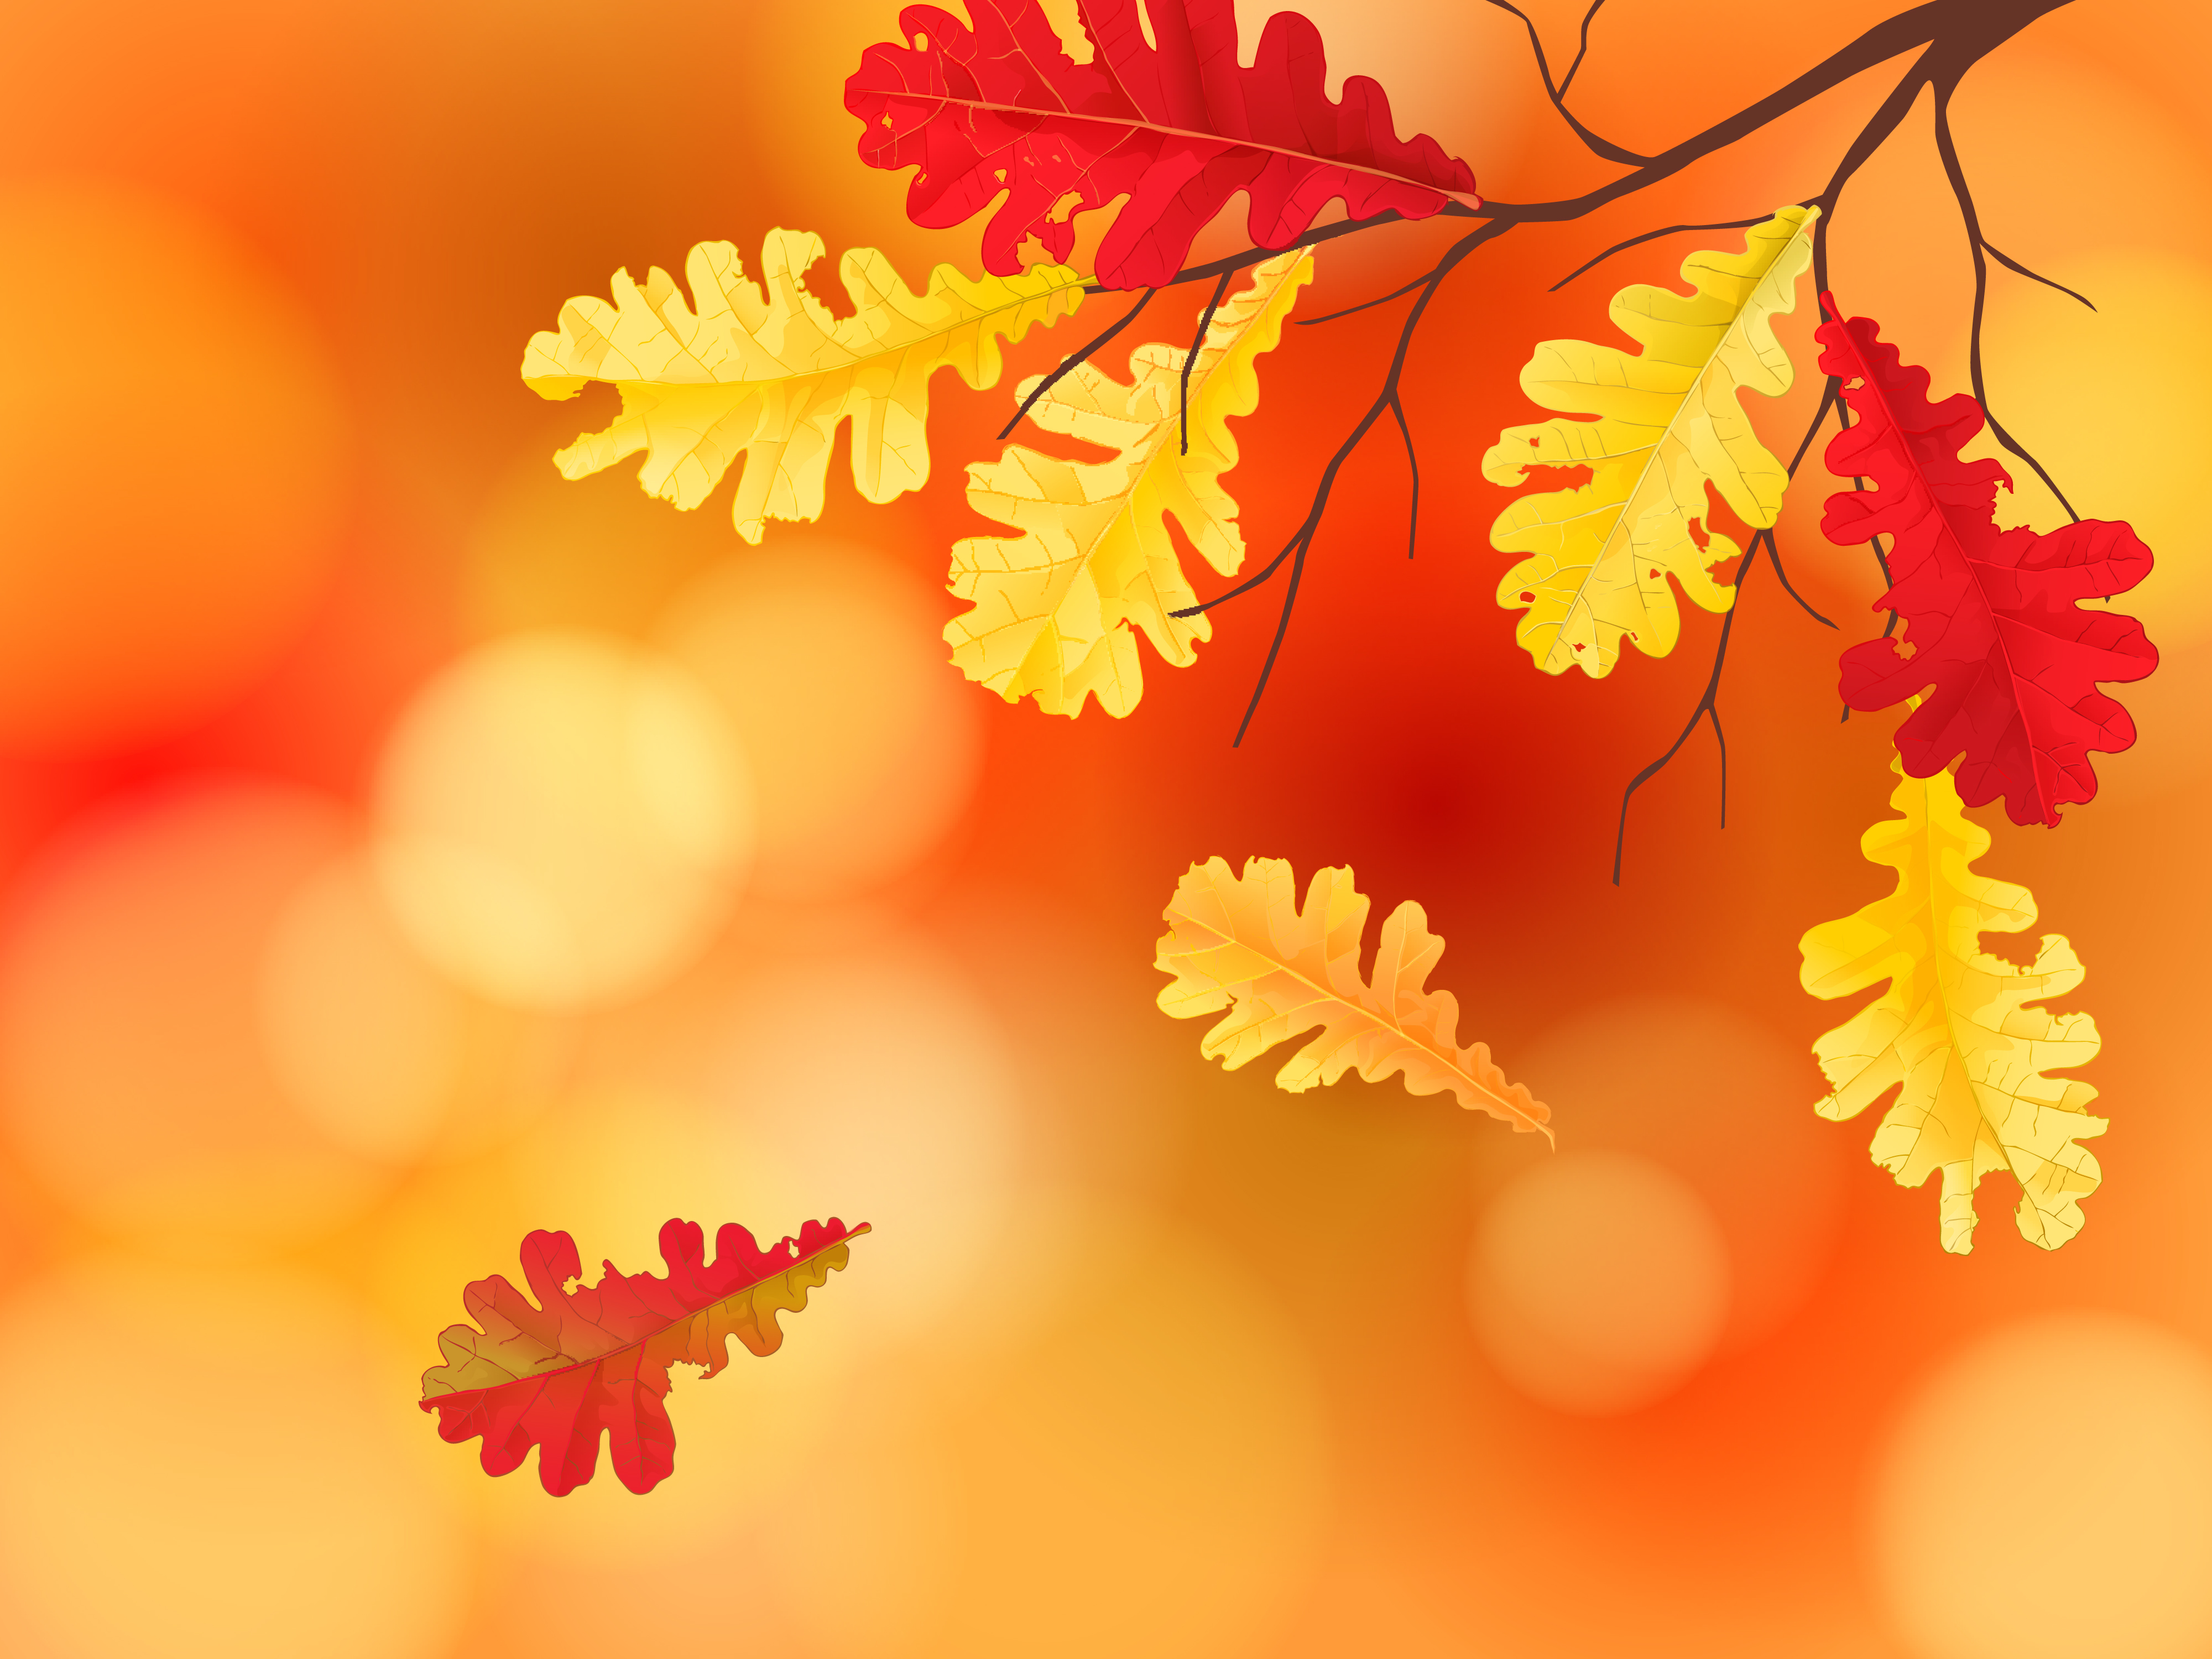 Скачать обои бесплатно Осень, Лист, Цвета, Художественные картинка на рабочий стол ПК